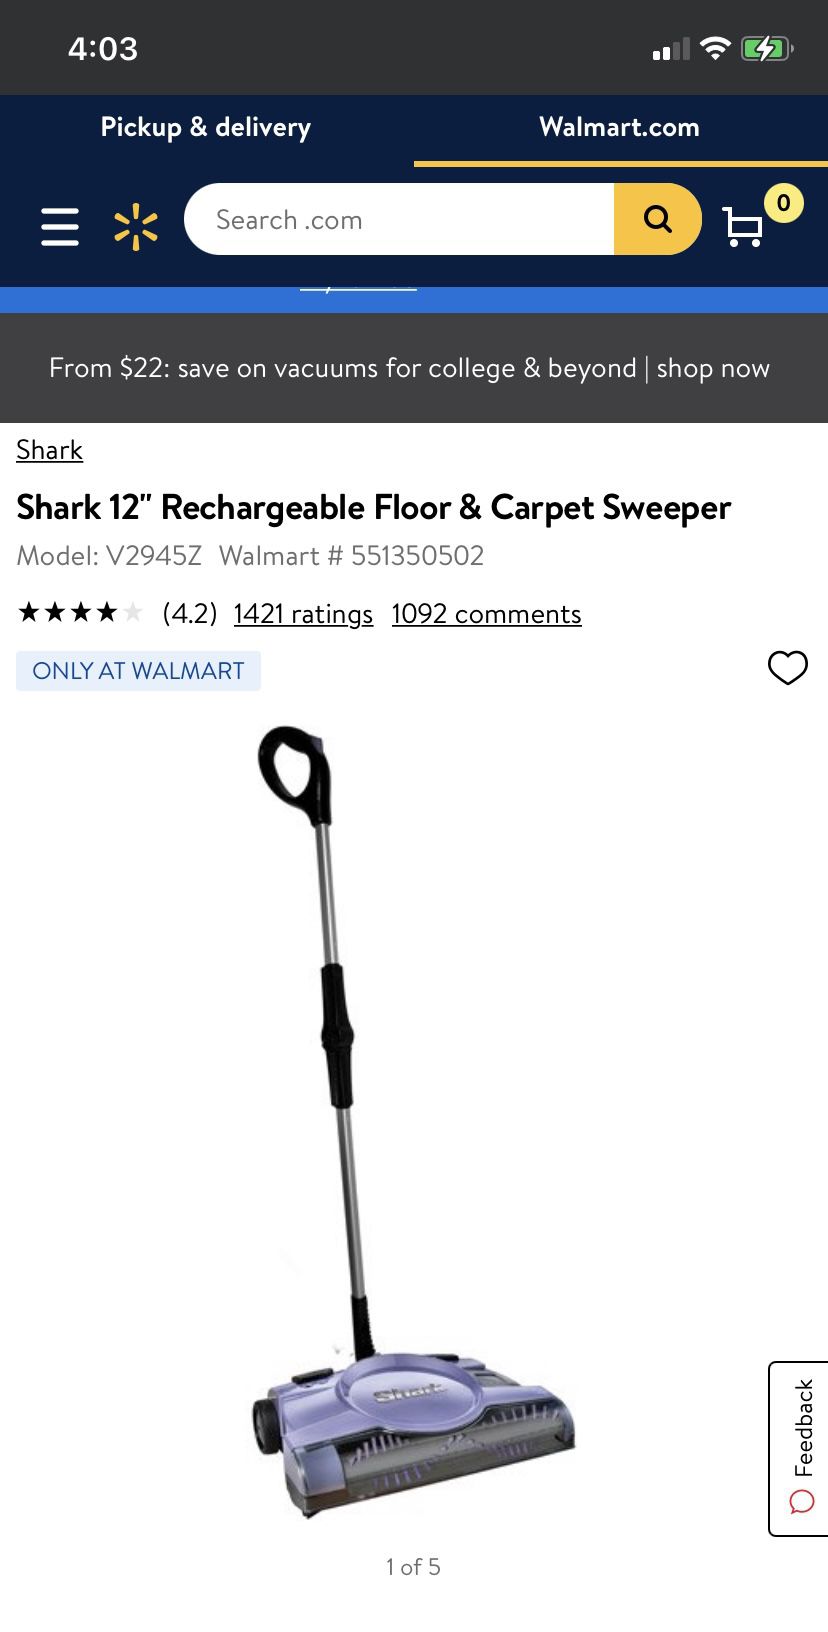 Shark 12" Rechargeable Floor & Carpet Sweeper